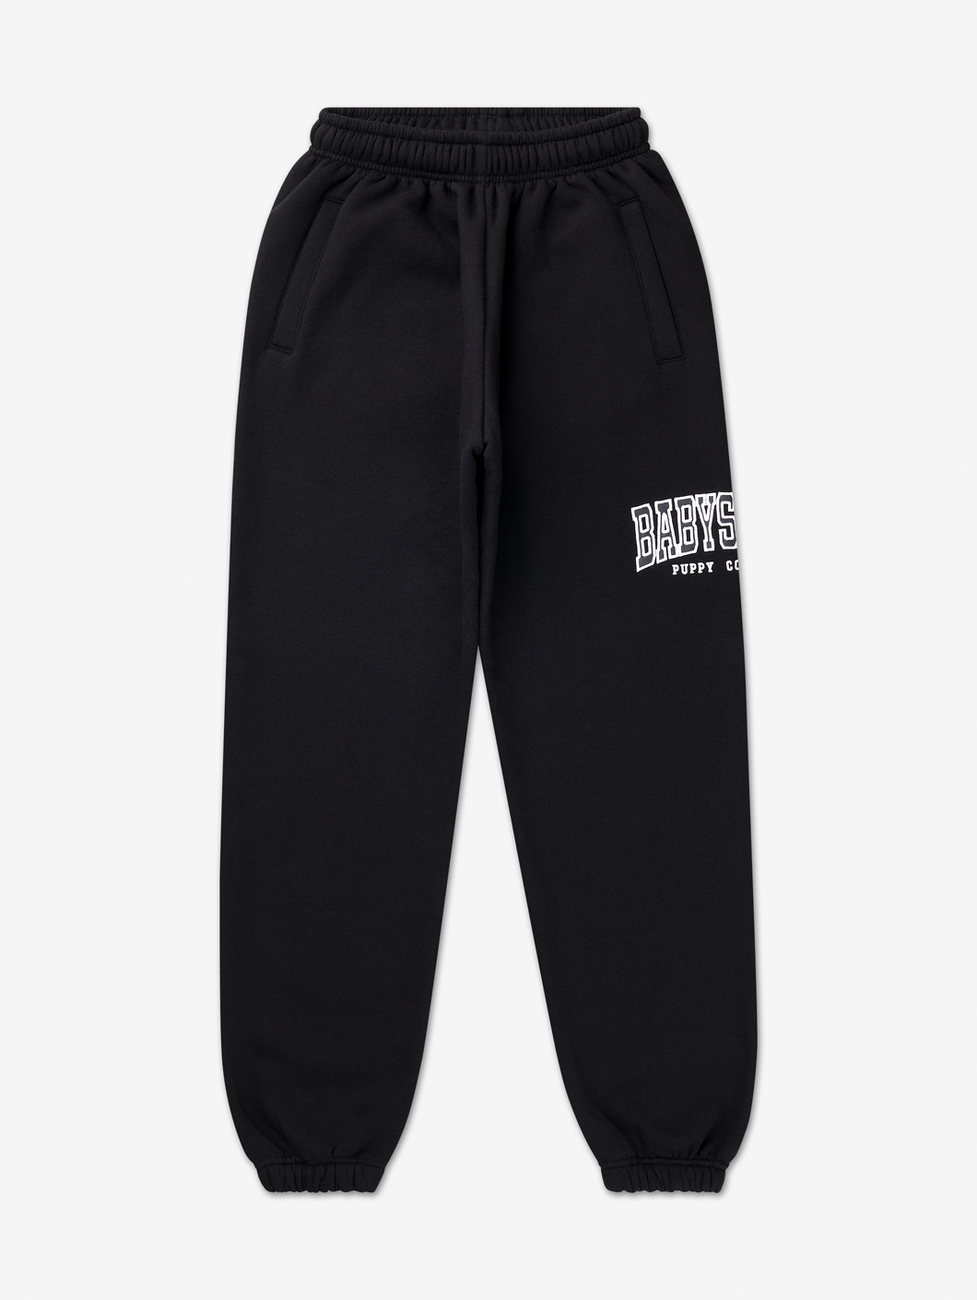 Babystaff College Sweatpants - schwarz S